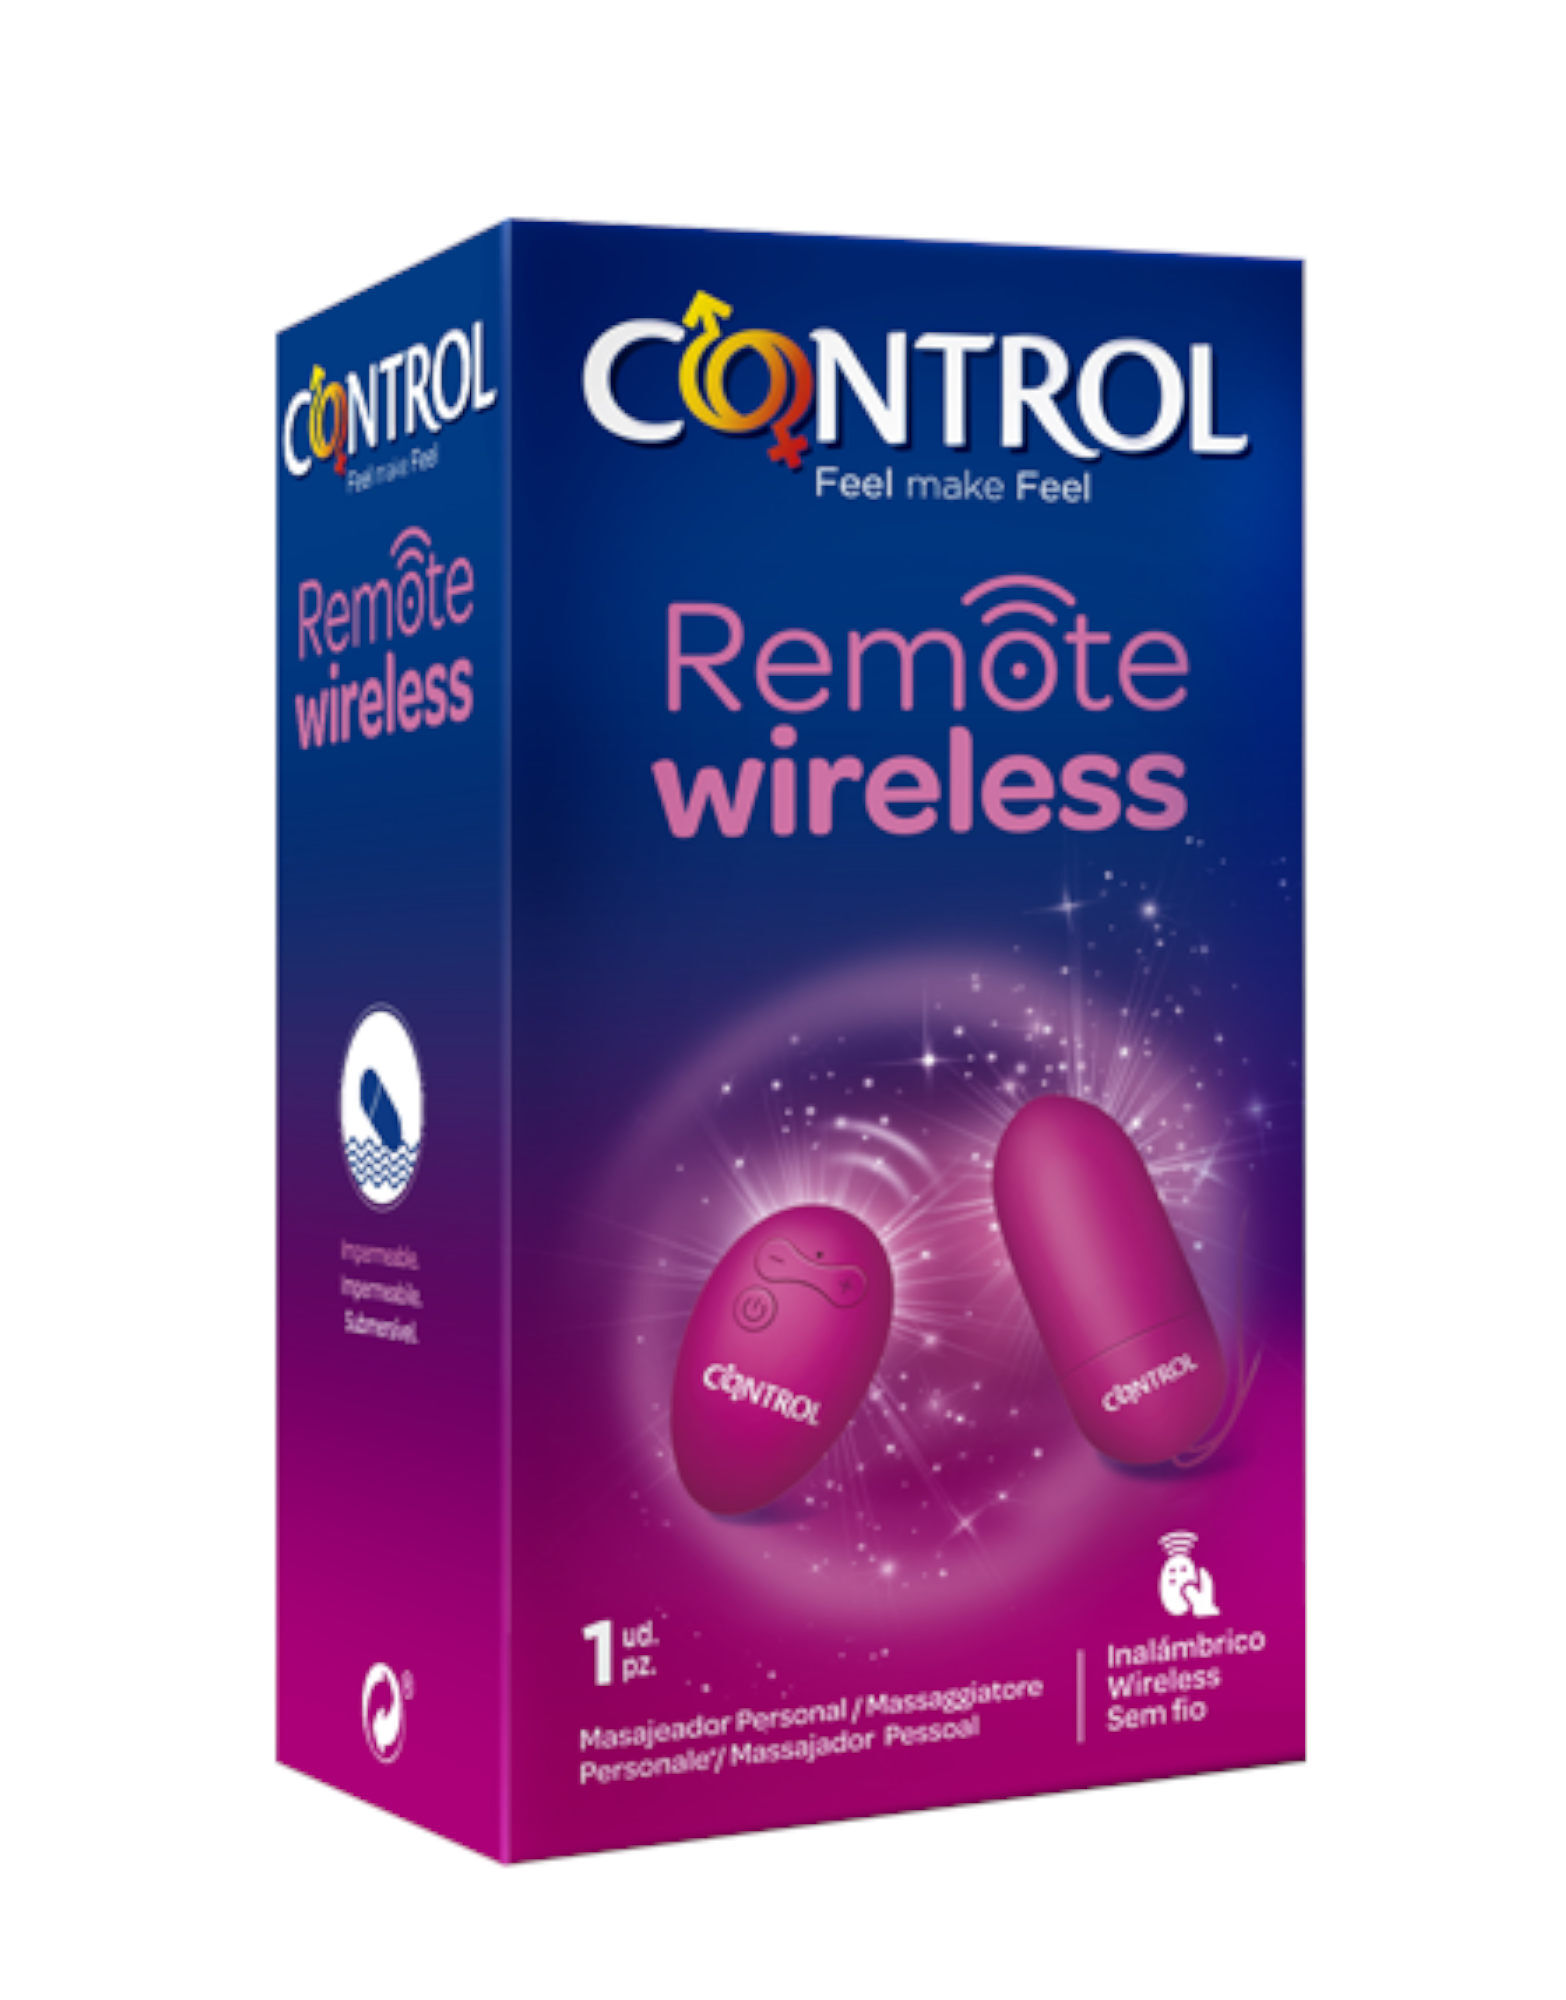 CONTROL Massaggiatore Remote Wireless 1 Massaggiatore